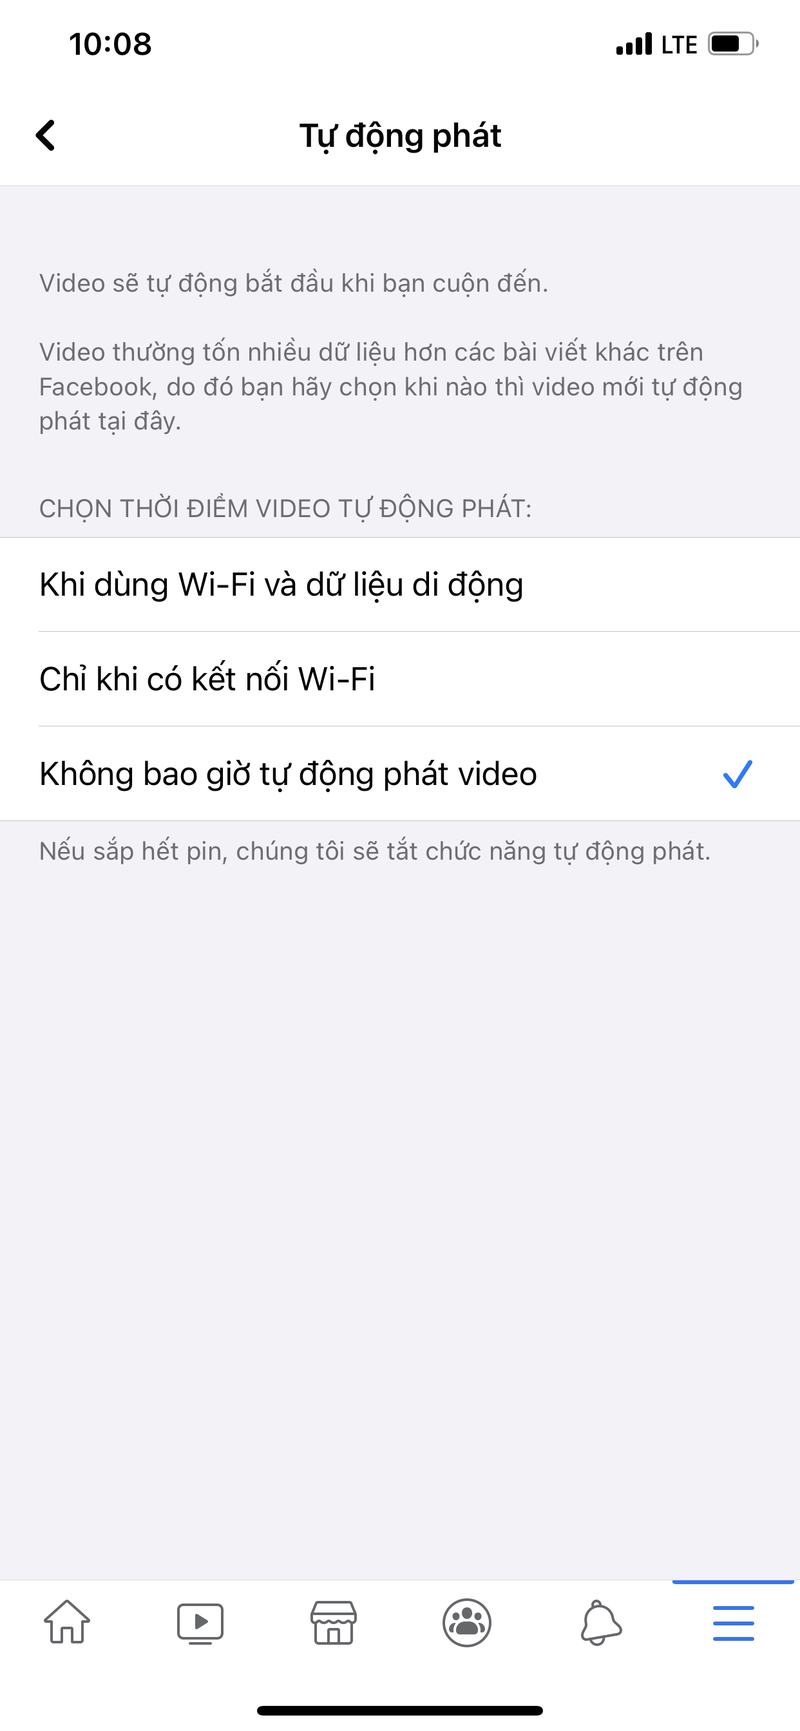 Huong dan ban tat tinh nang phat video tu dong tren Facebook-Hinh-4